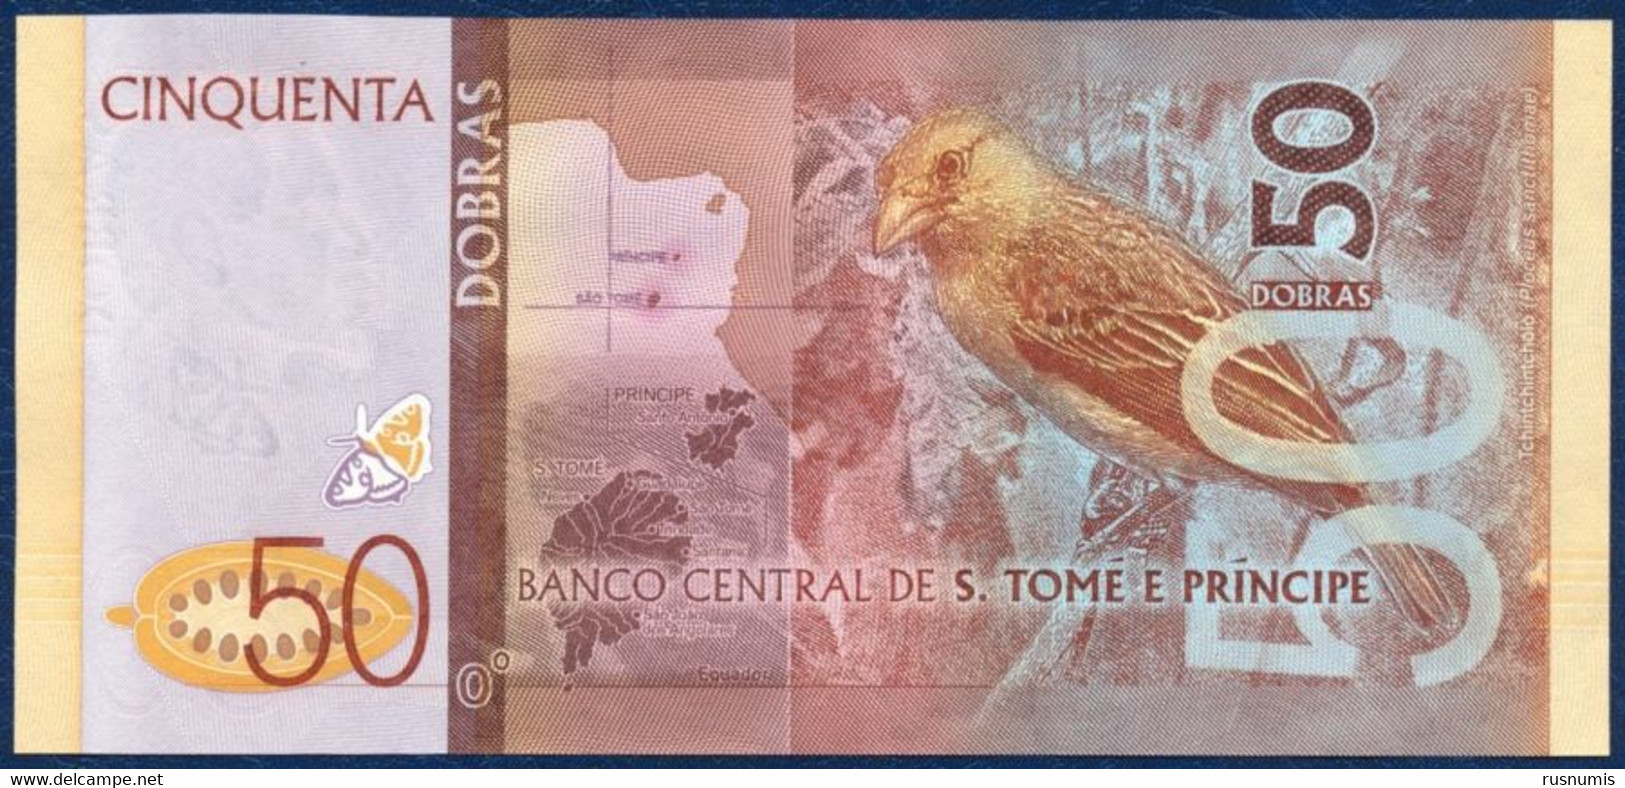 SAN TOME - SAO TOME AND PRINCIPE - ST. THOMAS 50 DOBRAS PICK-73 BUTTERFLY BIRD 2016 UNC - Sao Tome And Principe